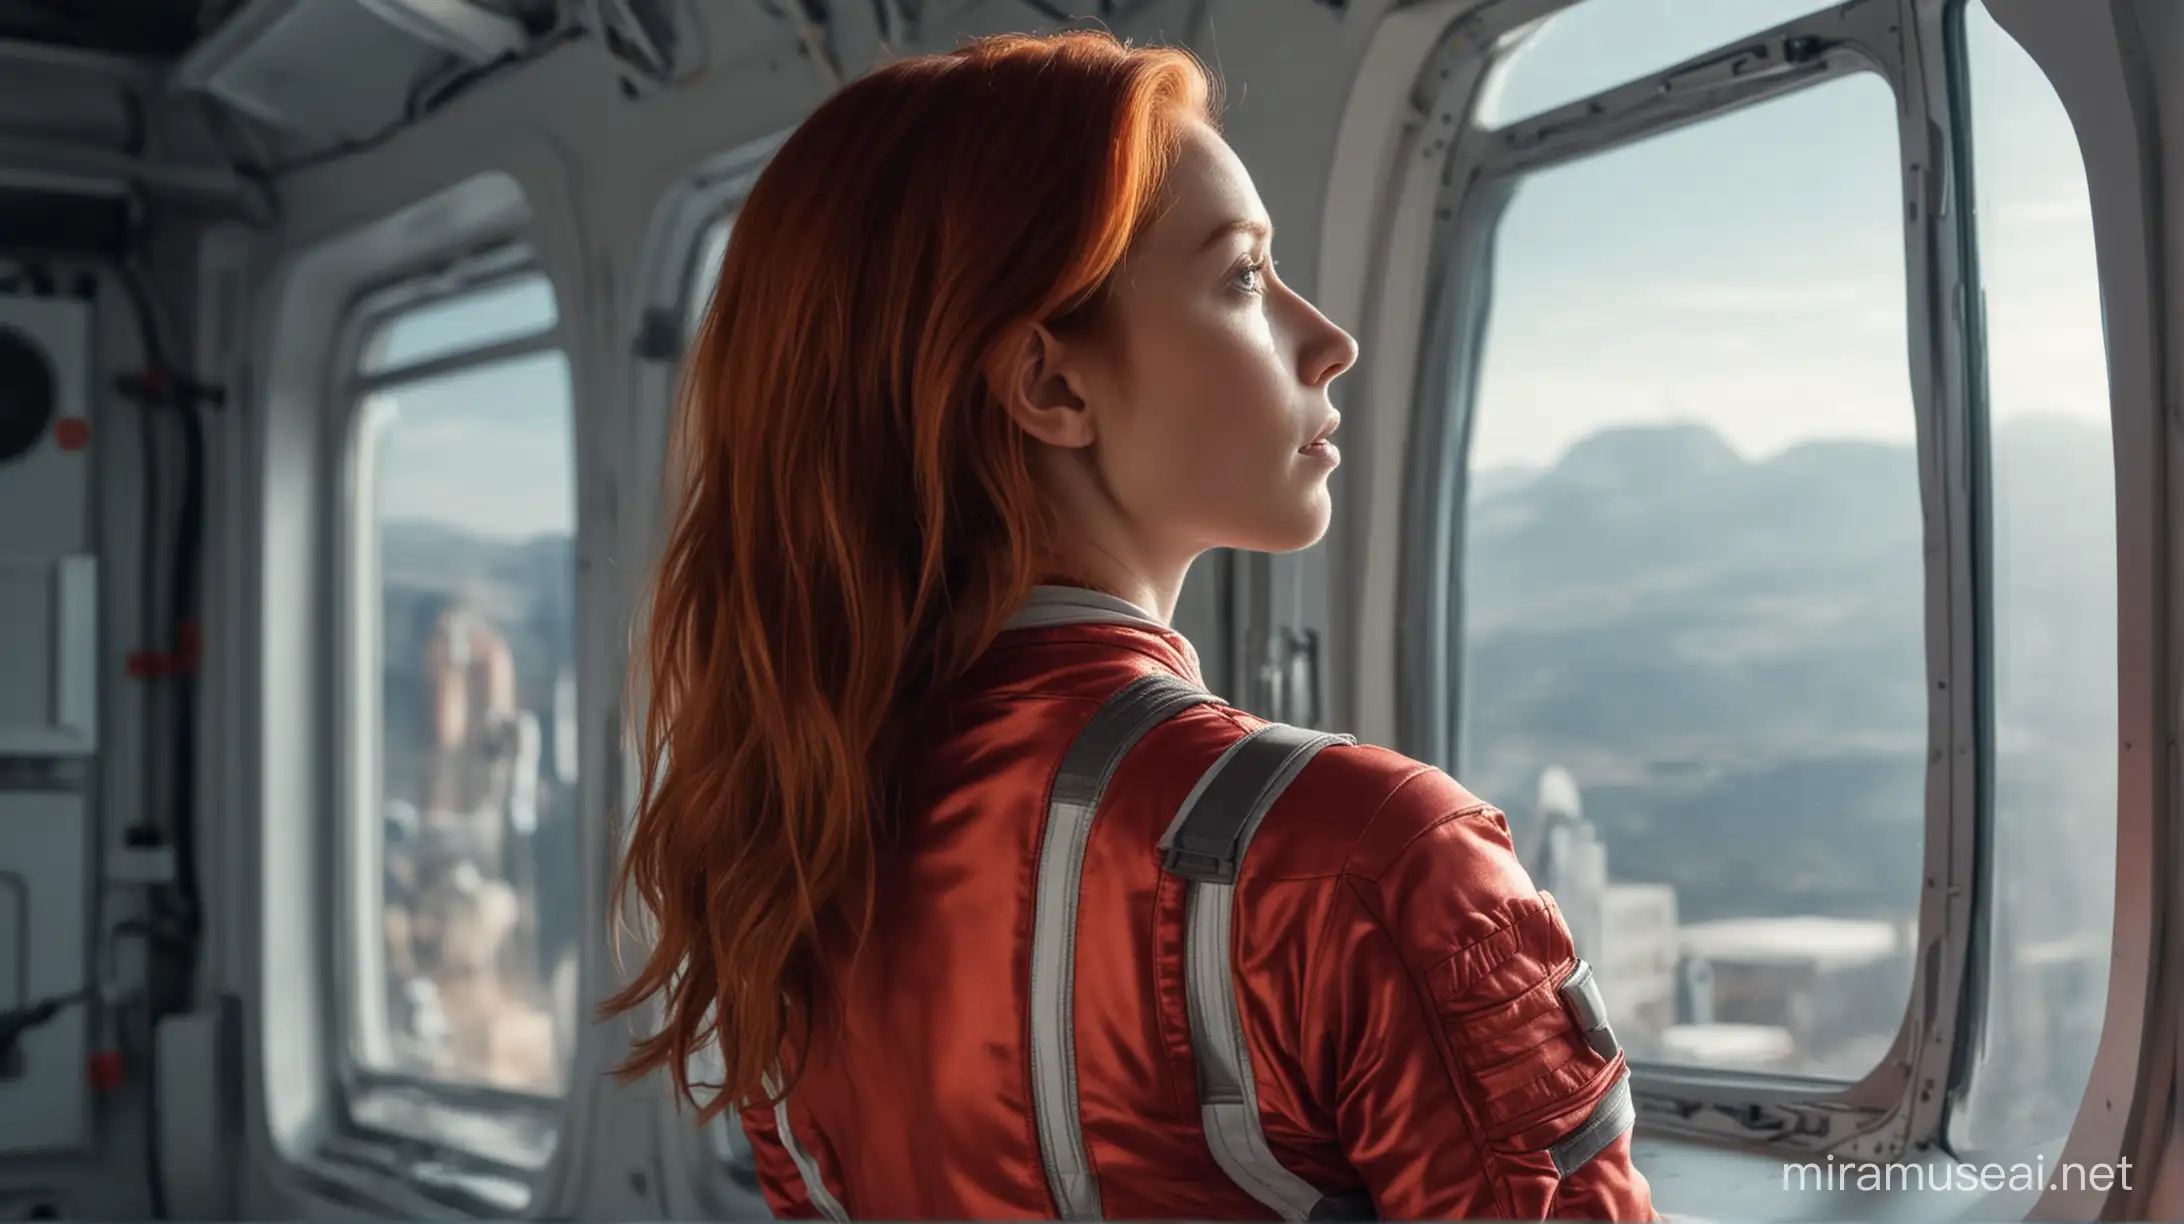 стройная рыжеволосая девушка астронавт с большой красивой попой в красном обтягивающем комбинезоне стоит сбоку кадра спиной скрестив руки на большой груди смотрит в большое стекло на космос